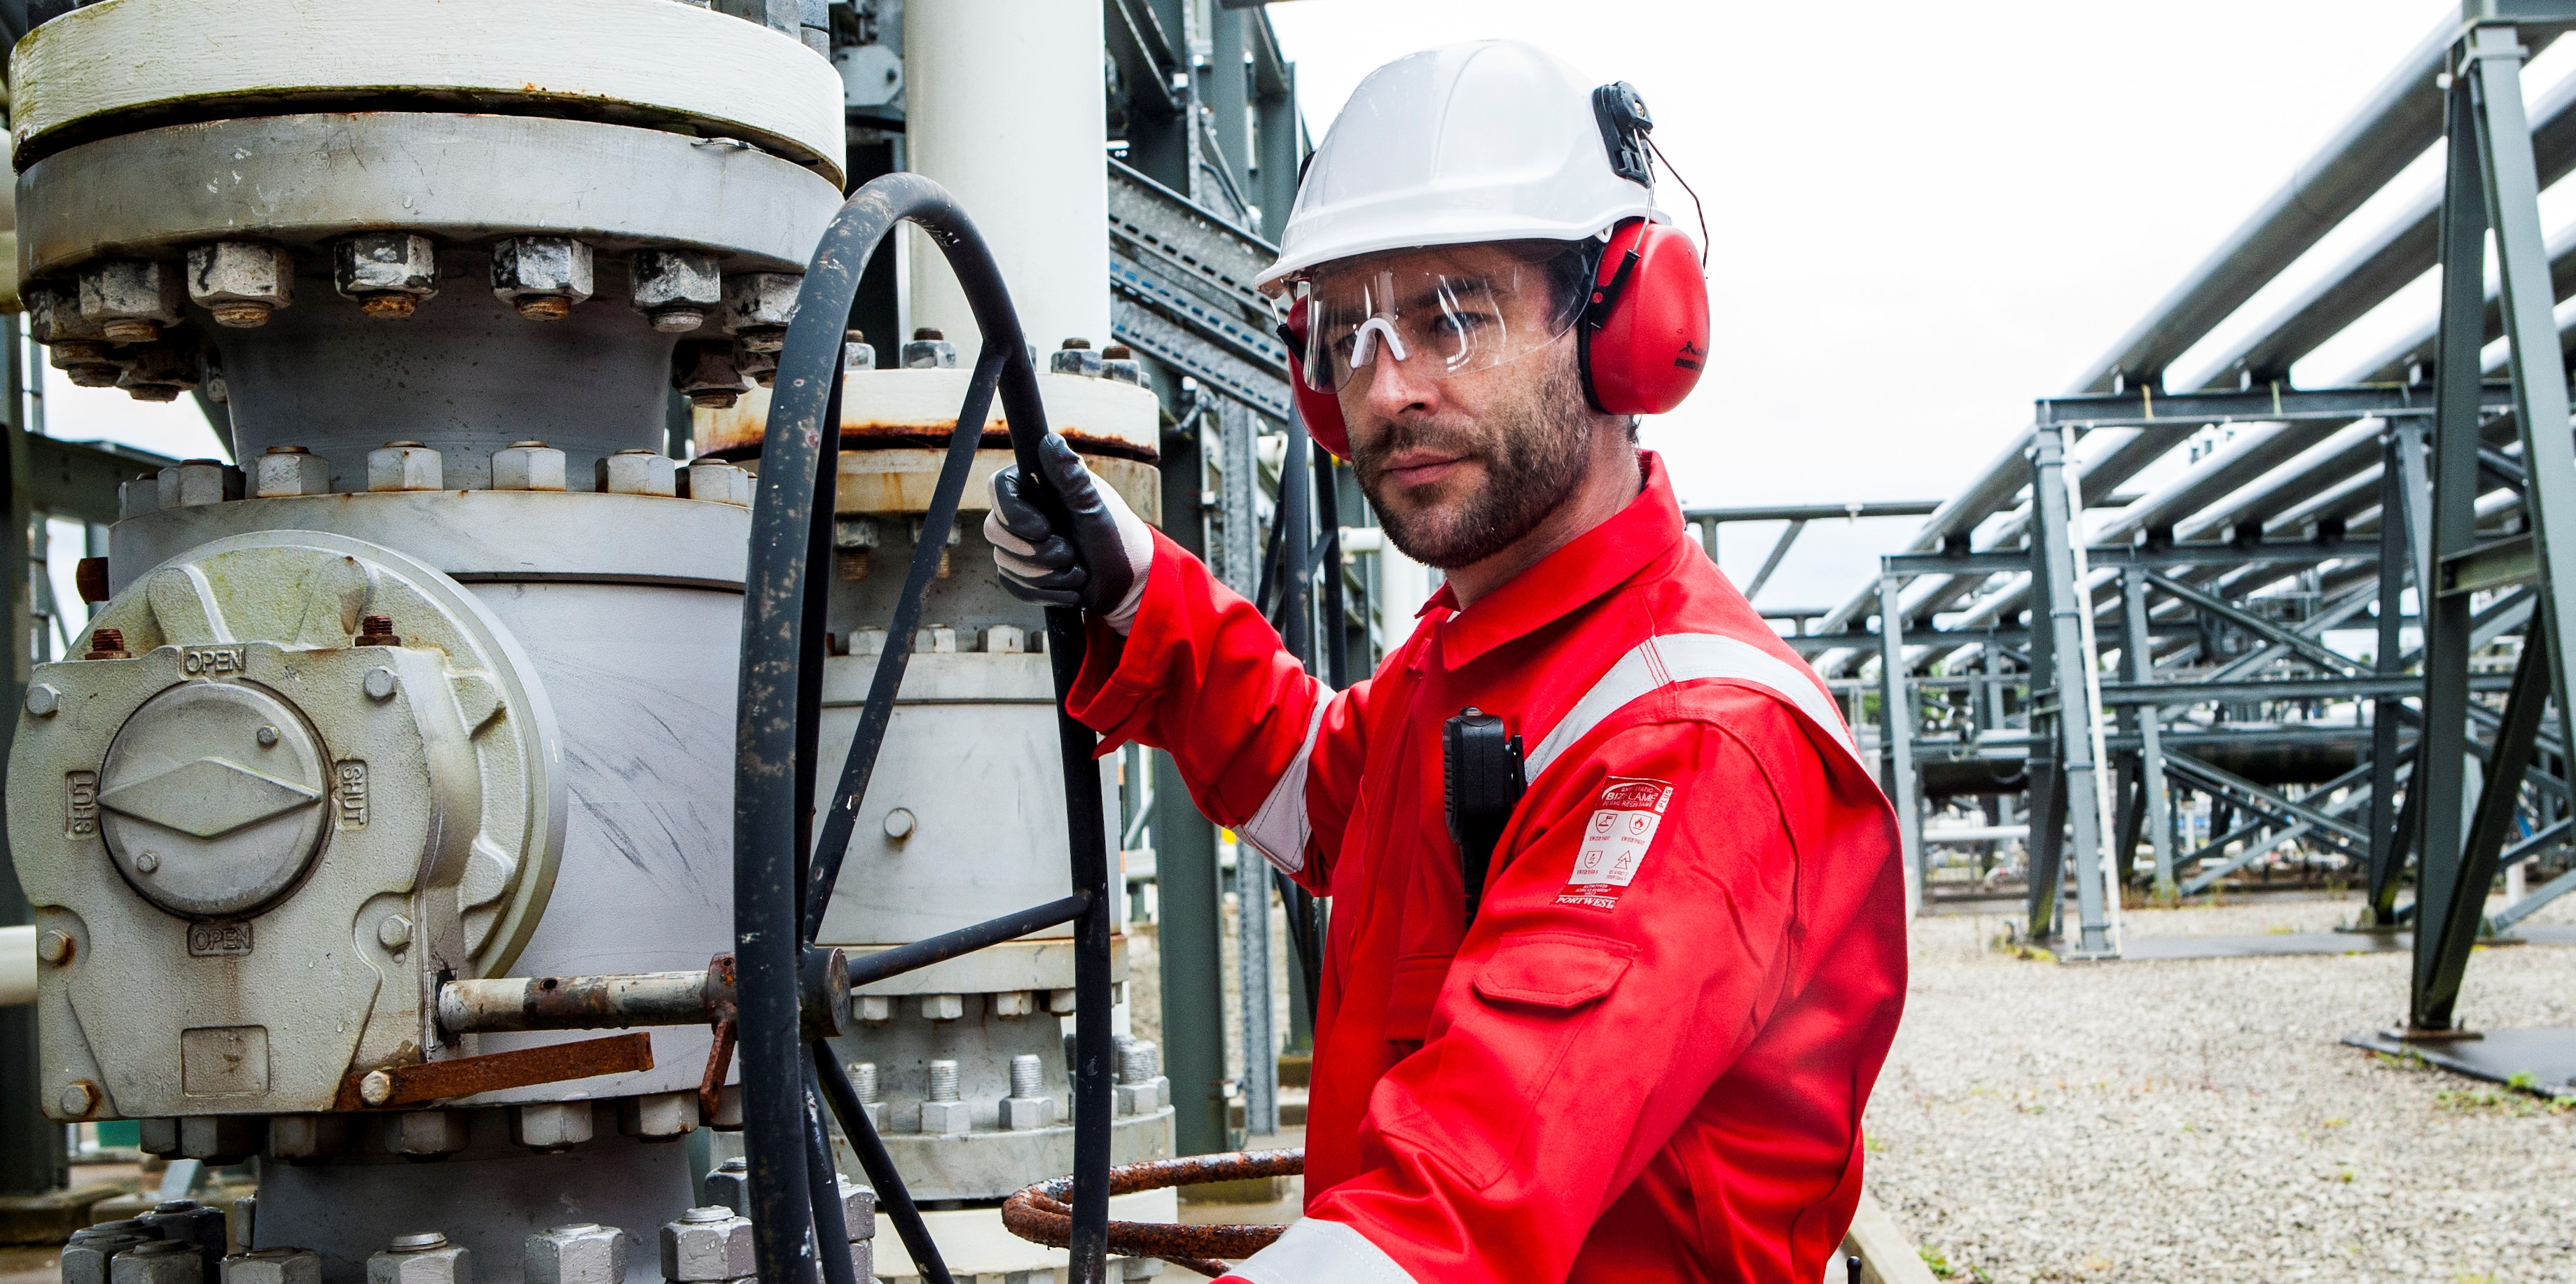 Arbeider in een industriële context met beschermende kleding: witte helm, veiligheidsbril, rode oorbeschermers, zwarte handschoenen en rode FR50-overall met reflecterende strepen.